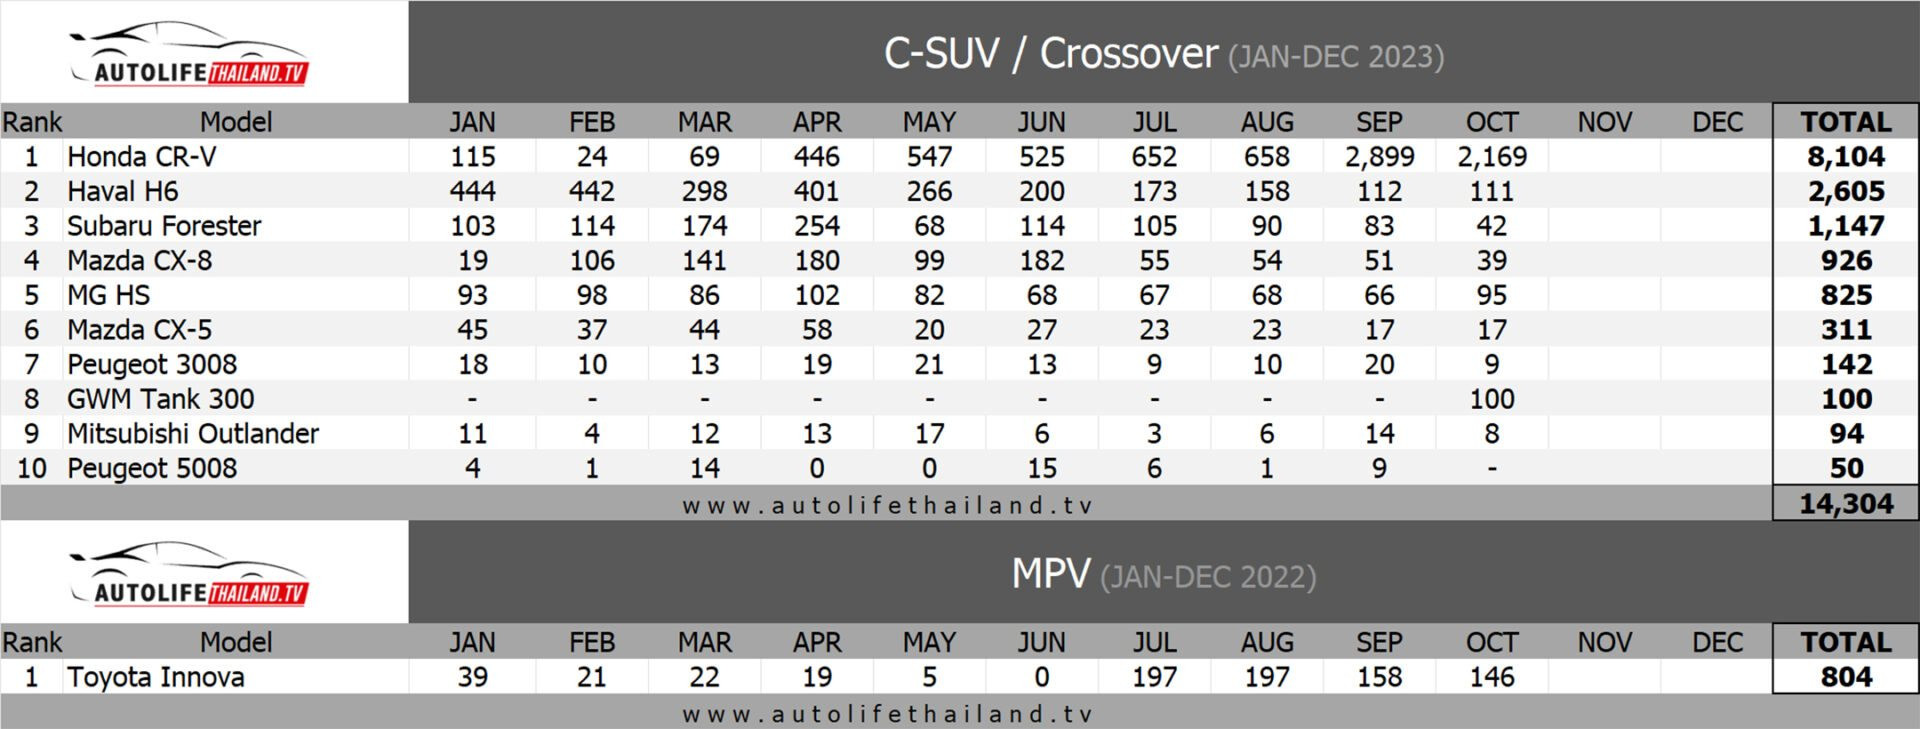 csuv_crossover_oct23_table-1920x729.jpg